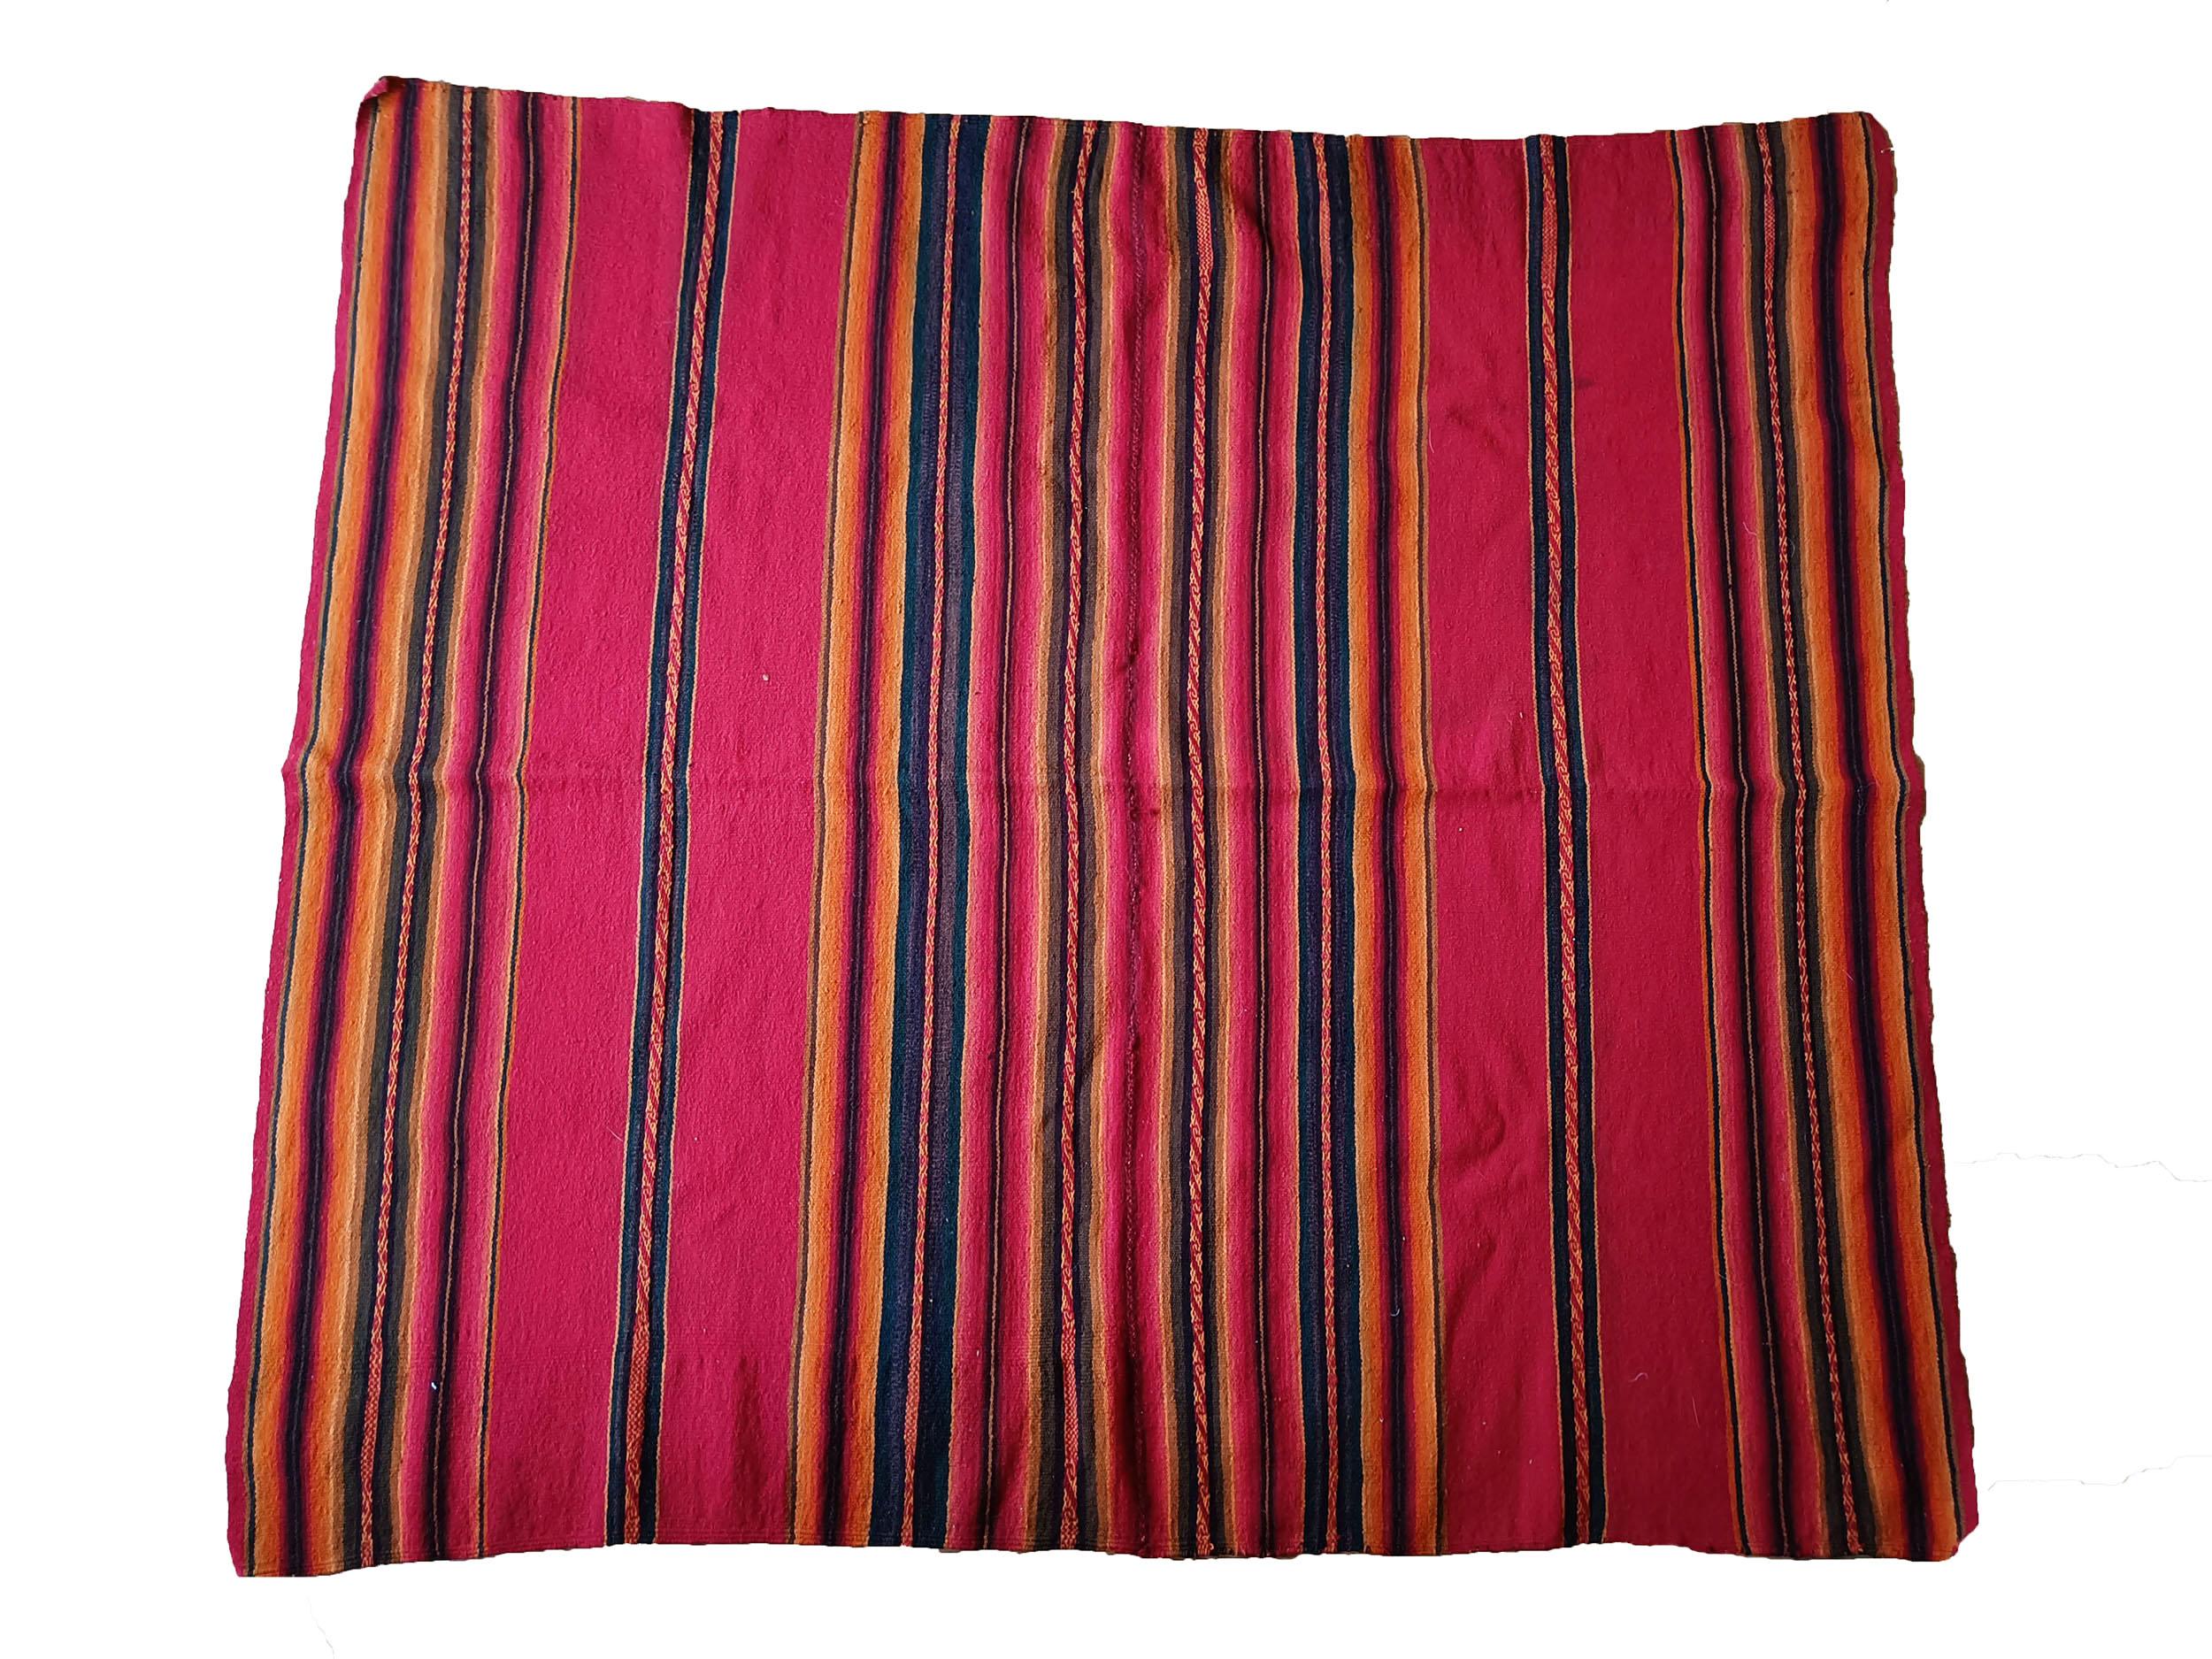 Vintage Andean Peruvian Manta Cloth South American Vintage Textiles.
Un très beau tissu Vintage Manta de la région des Hautes Andes au Pérou Tissé en fibre de camélidés (laine de lama) magnifiquement exécuté dans des couleurs teintées naturelles.